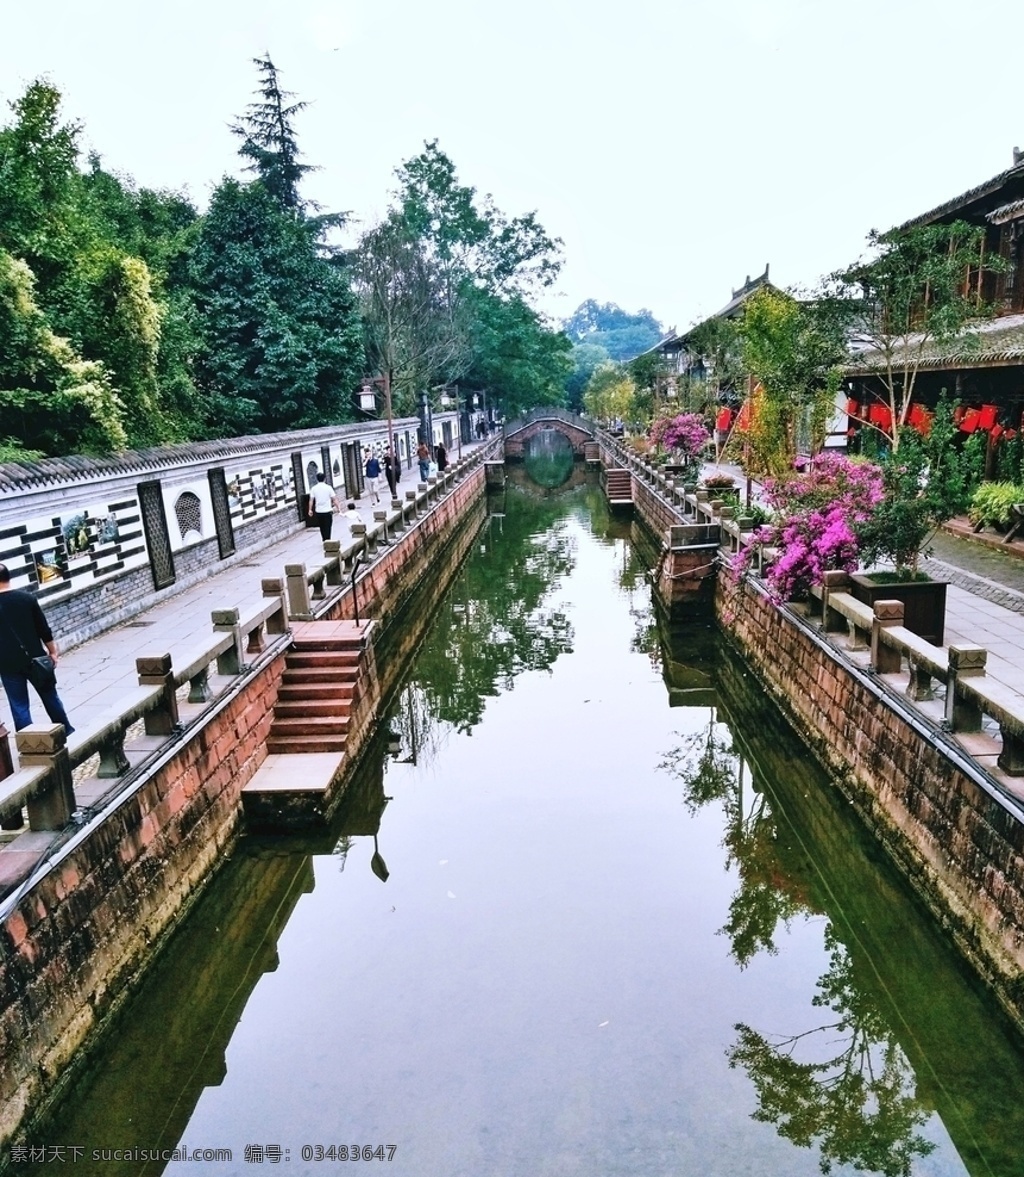 街子古镇 成都崇州 桥 河水 美景 建筑 旅游风景 旅游摄影 自然风景